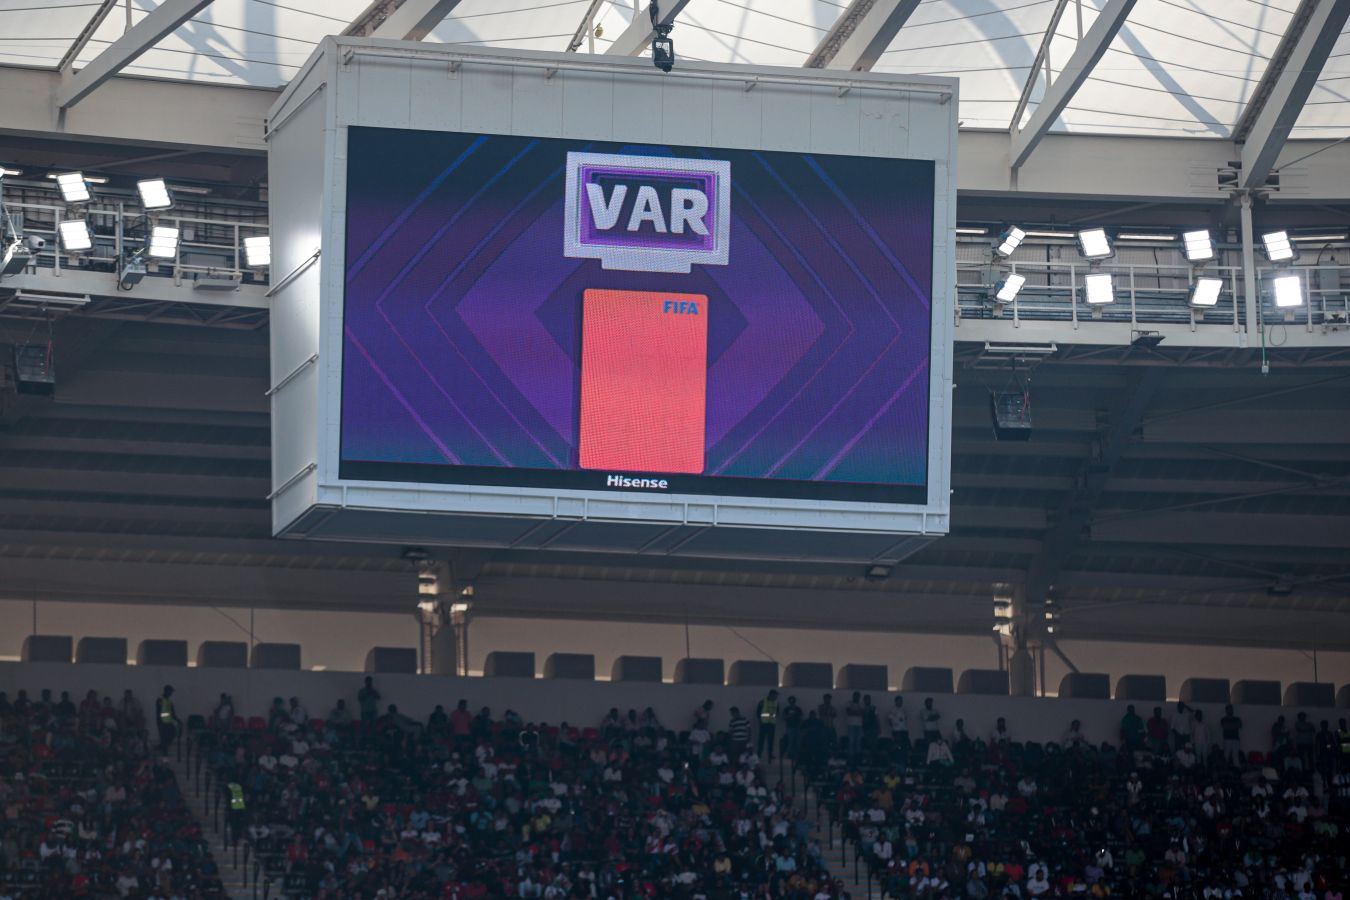 В УЕФА рассказали о положительном эффекте введения VAR